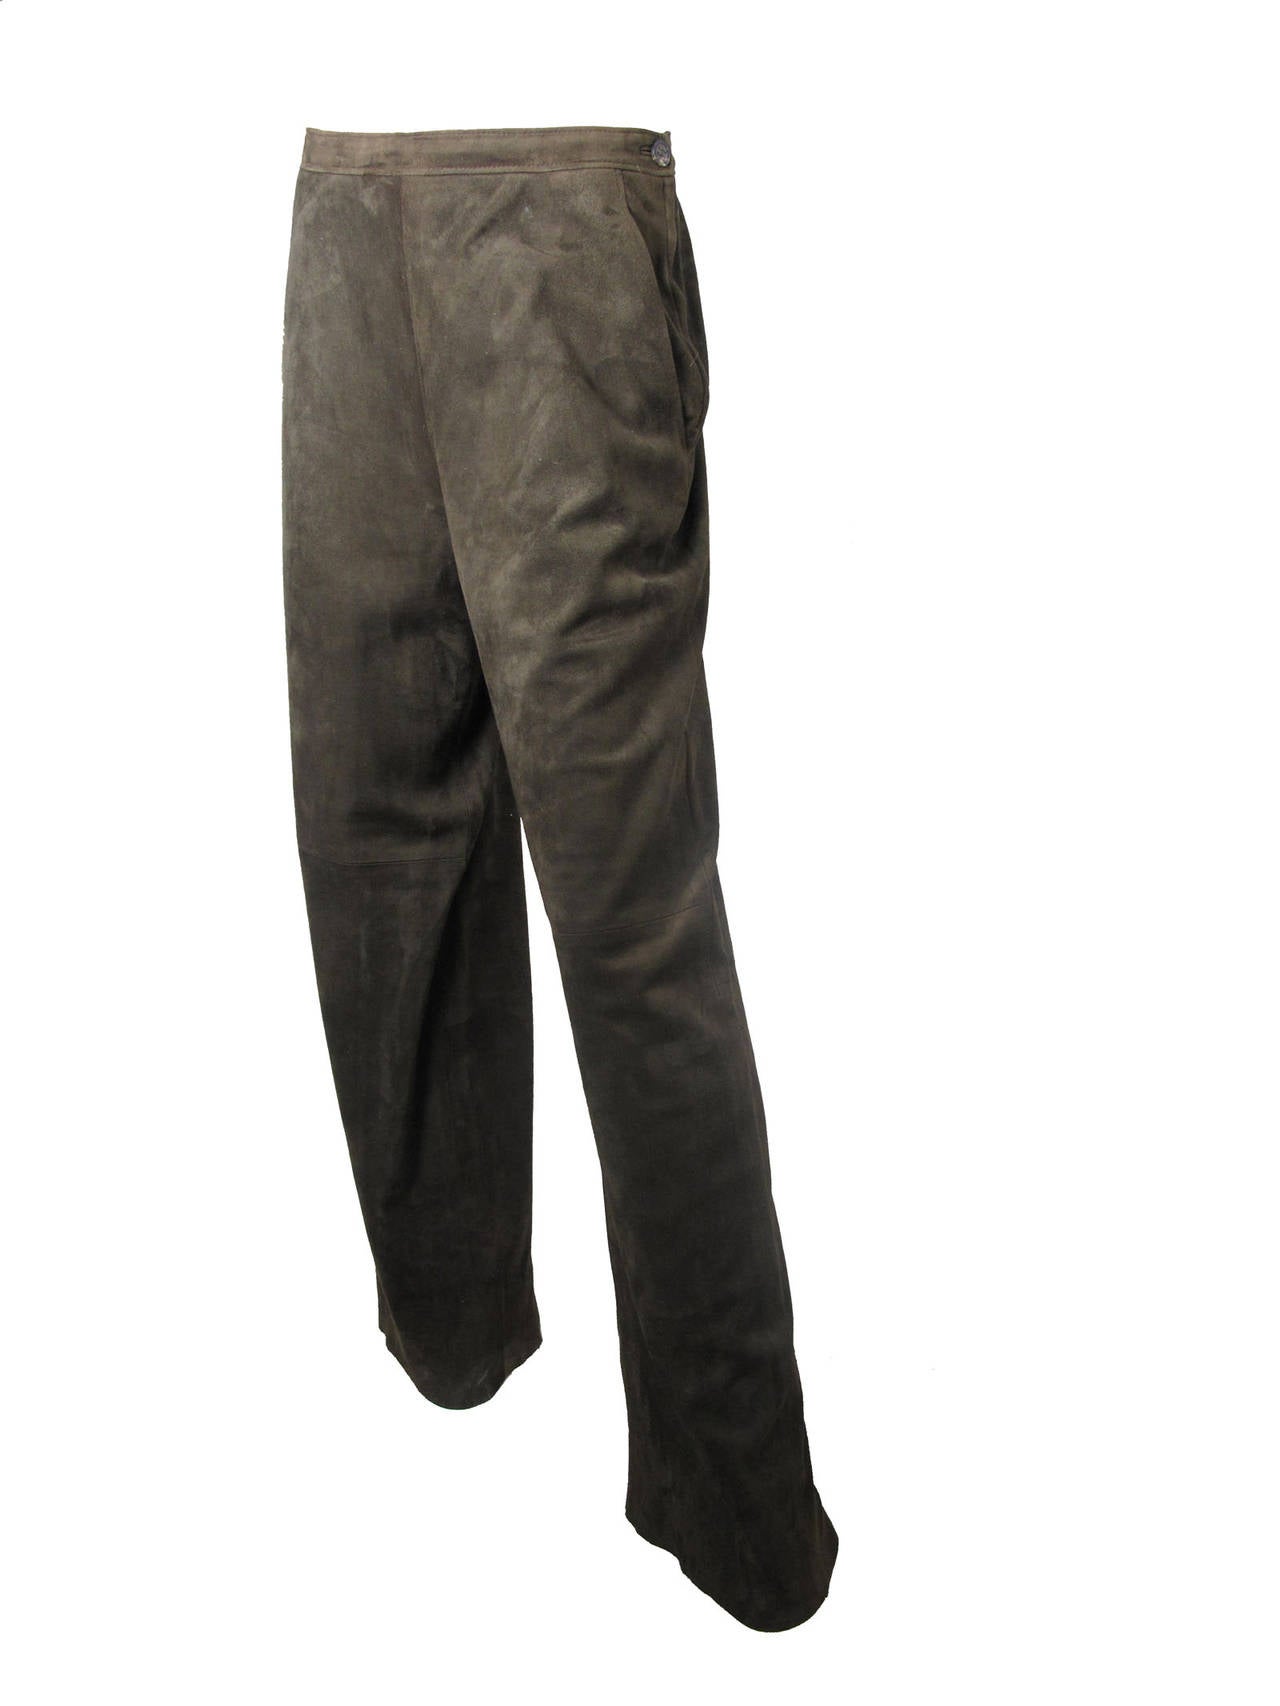 Hermes wide leg olive lambskin suede pants.  Super soft suede. Silk lining. Side pockets, 